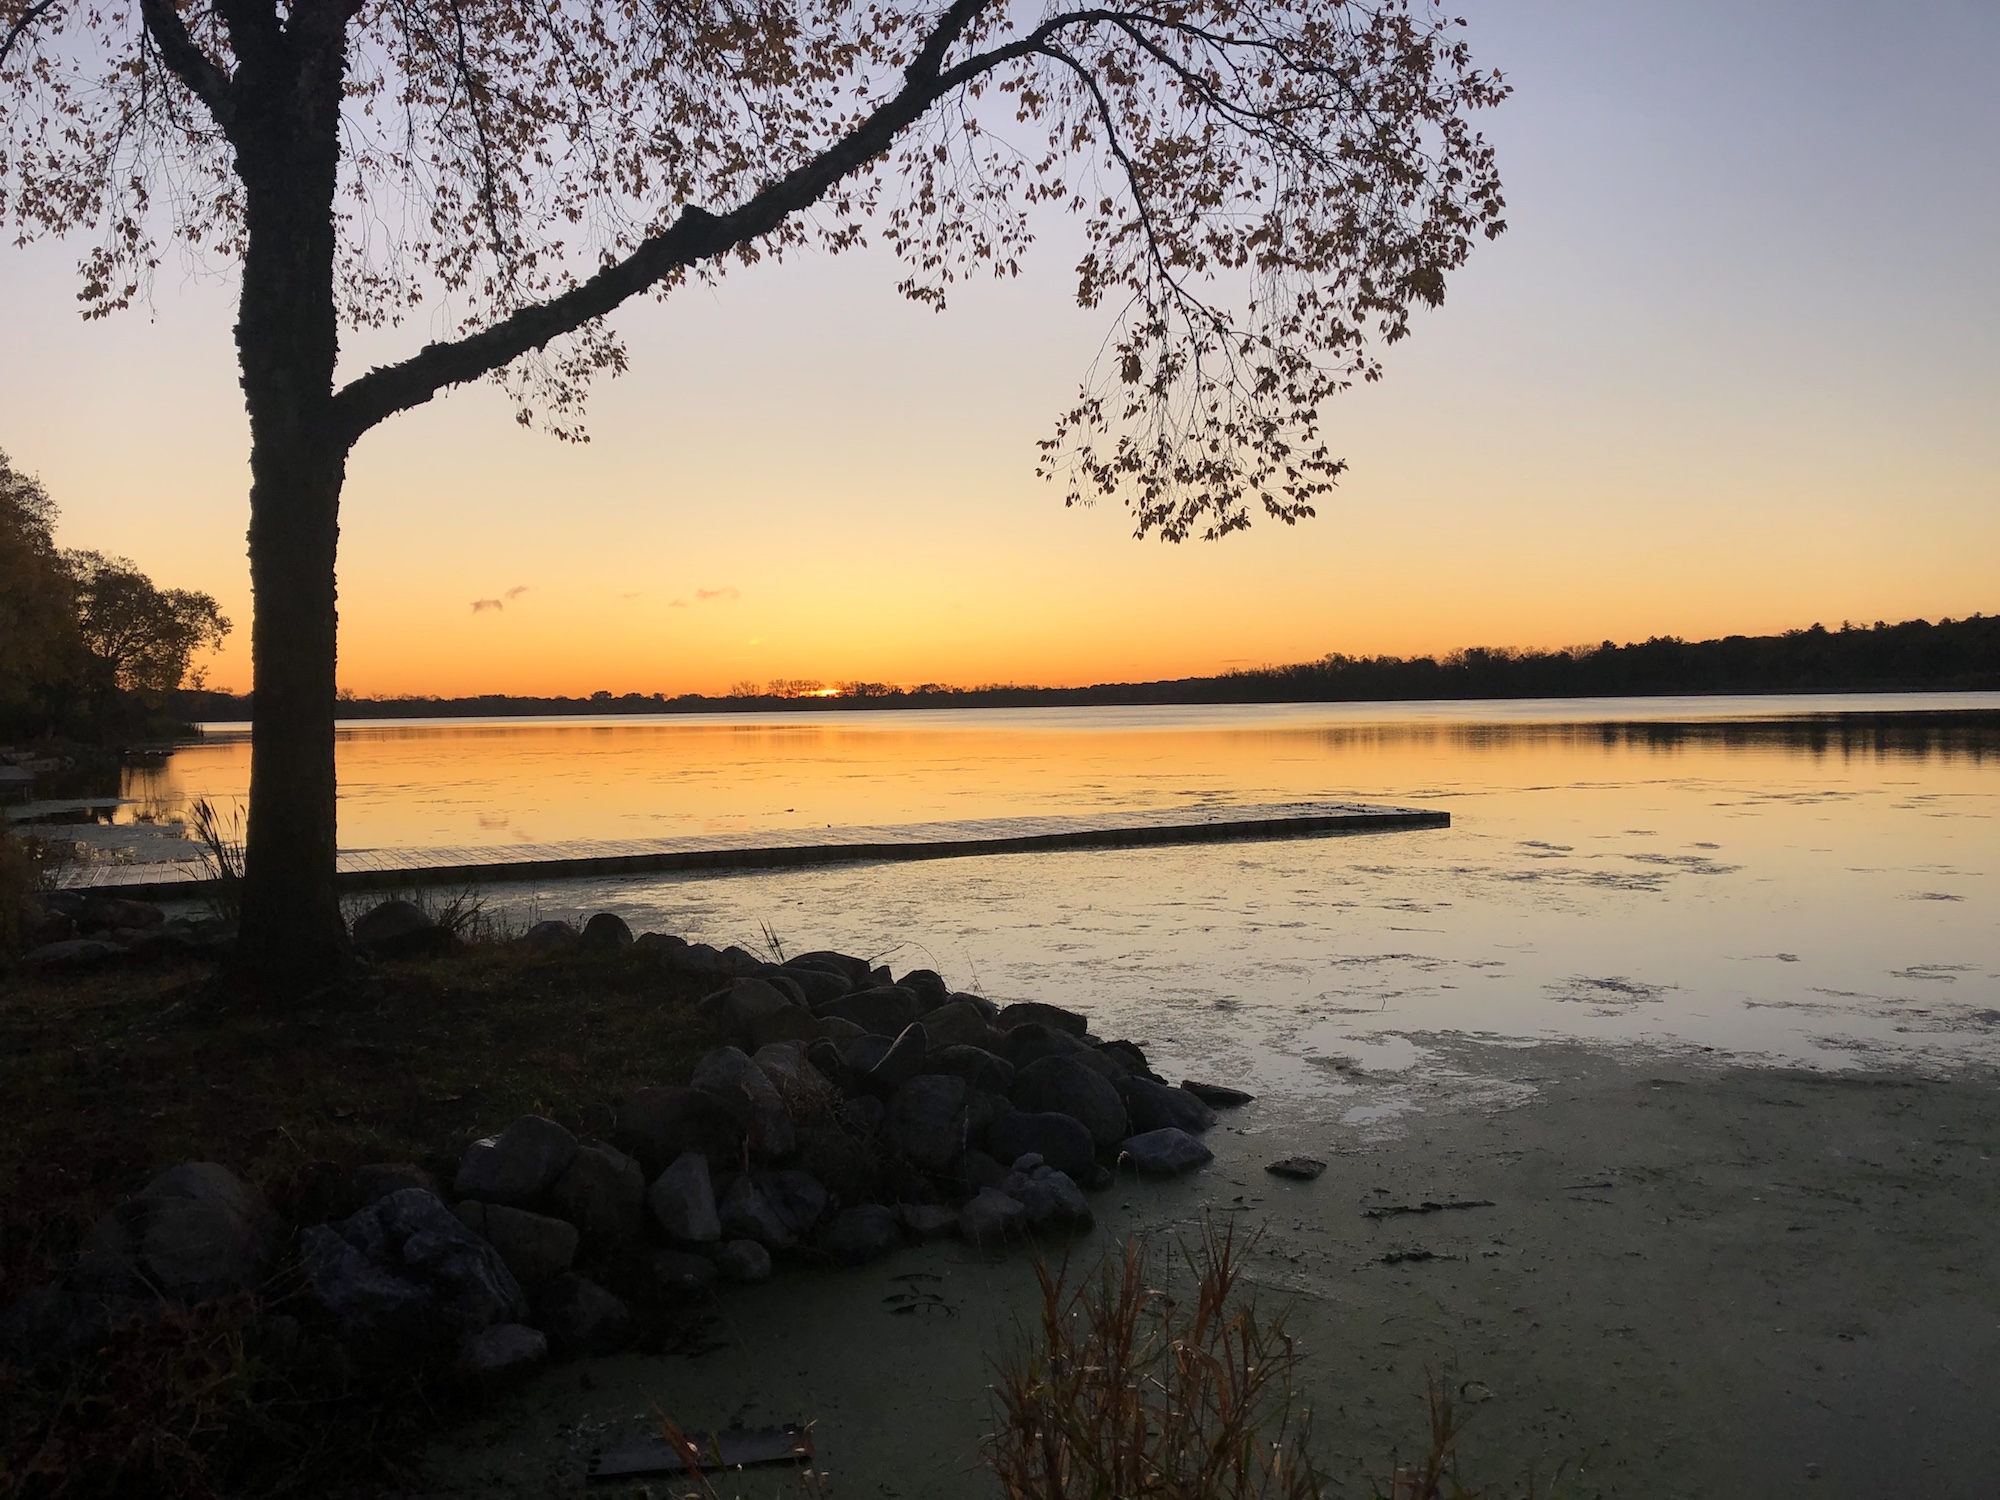 Lake Wingra on October 24, 2019.